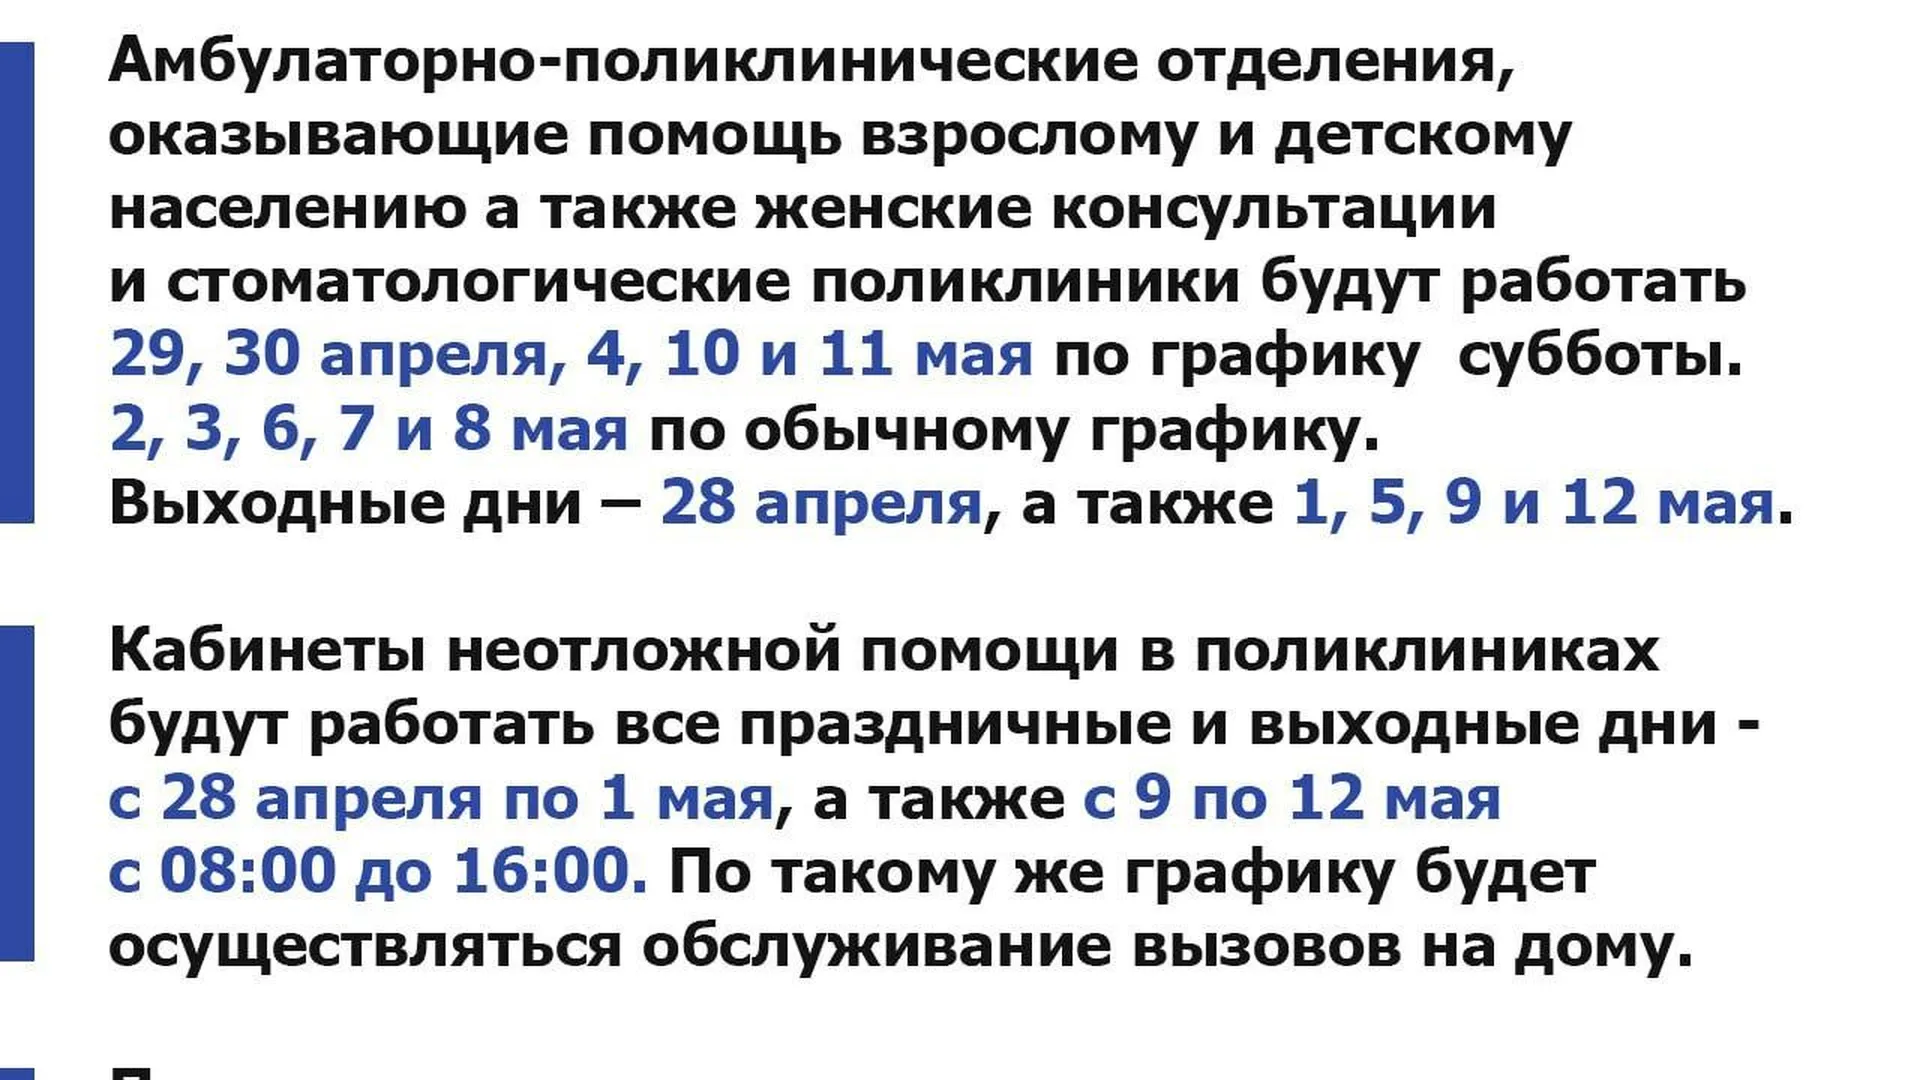 В Подмосковье стал известен график работы медорганизаций в майские праздники